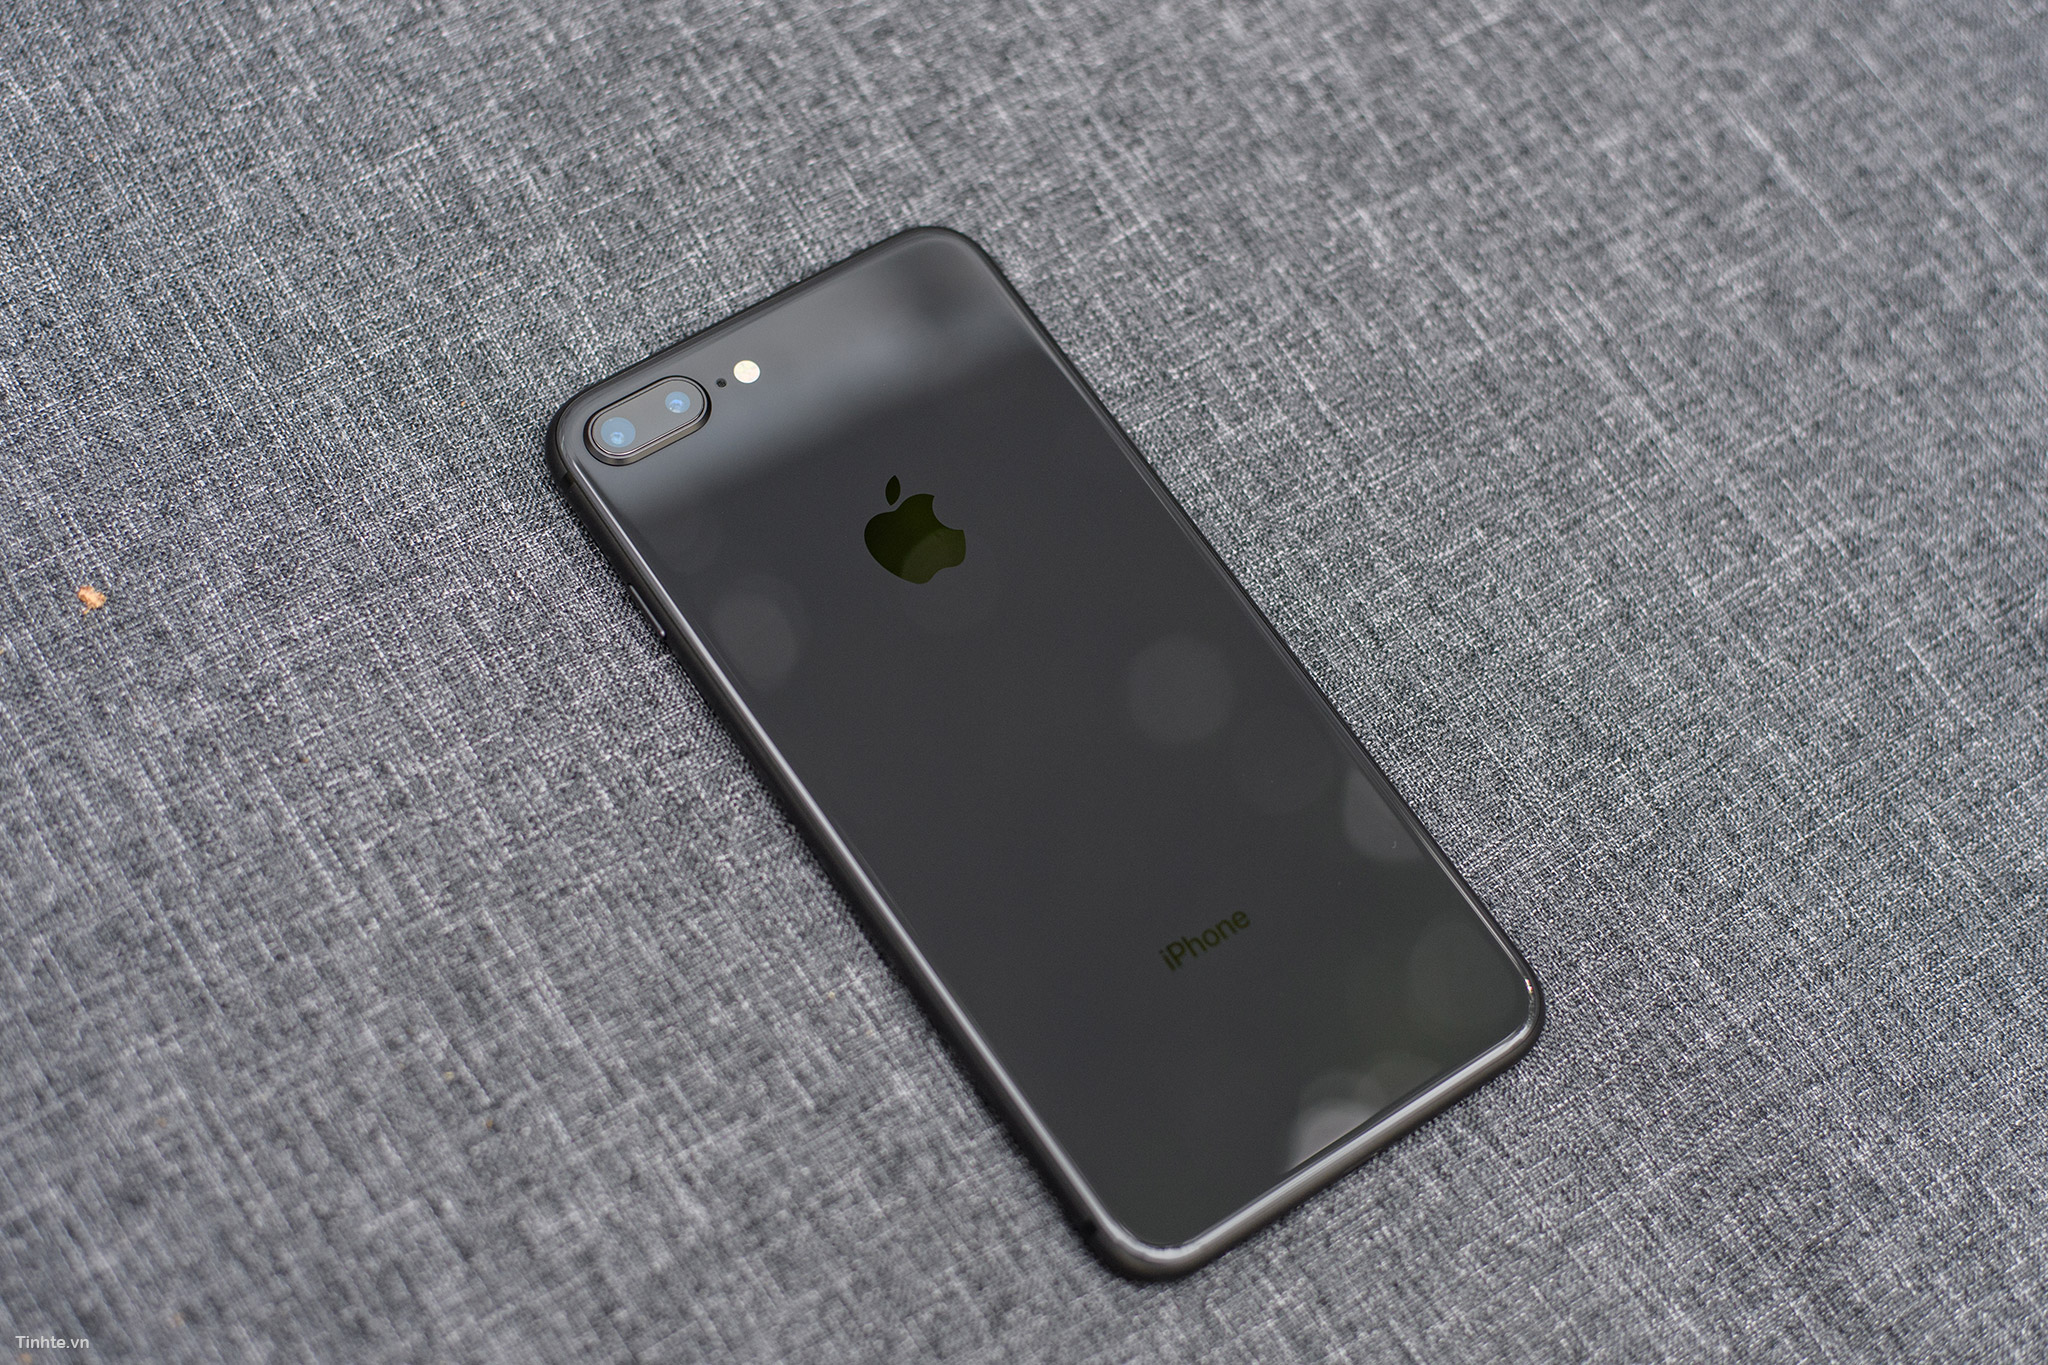 iPhone 8/8 Plus Space Gray - một màu mới lạ nhưng không kém phần quý phái. Hãy xem hình ảnh này để cảm nhận được sự khác biệt. Thiết kế mỏng nhẹ, camera đẳng cấp và hiệu suất mạnh mẽ, iPhone 8/8 Plus Space Gray sẽ là một trong những lựa chọn tốt nhất cho người dùng.